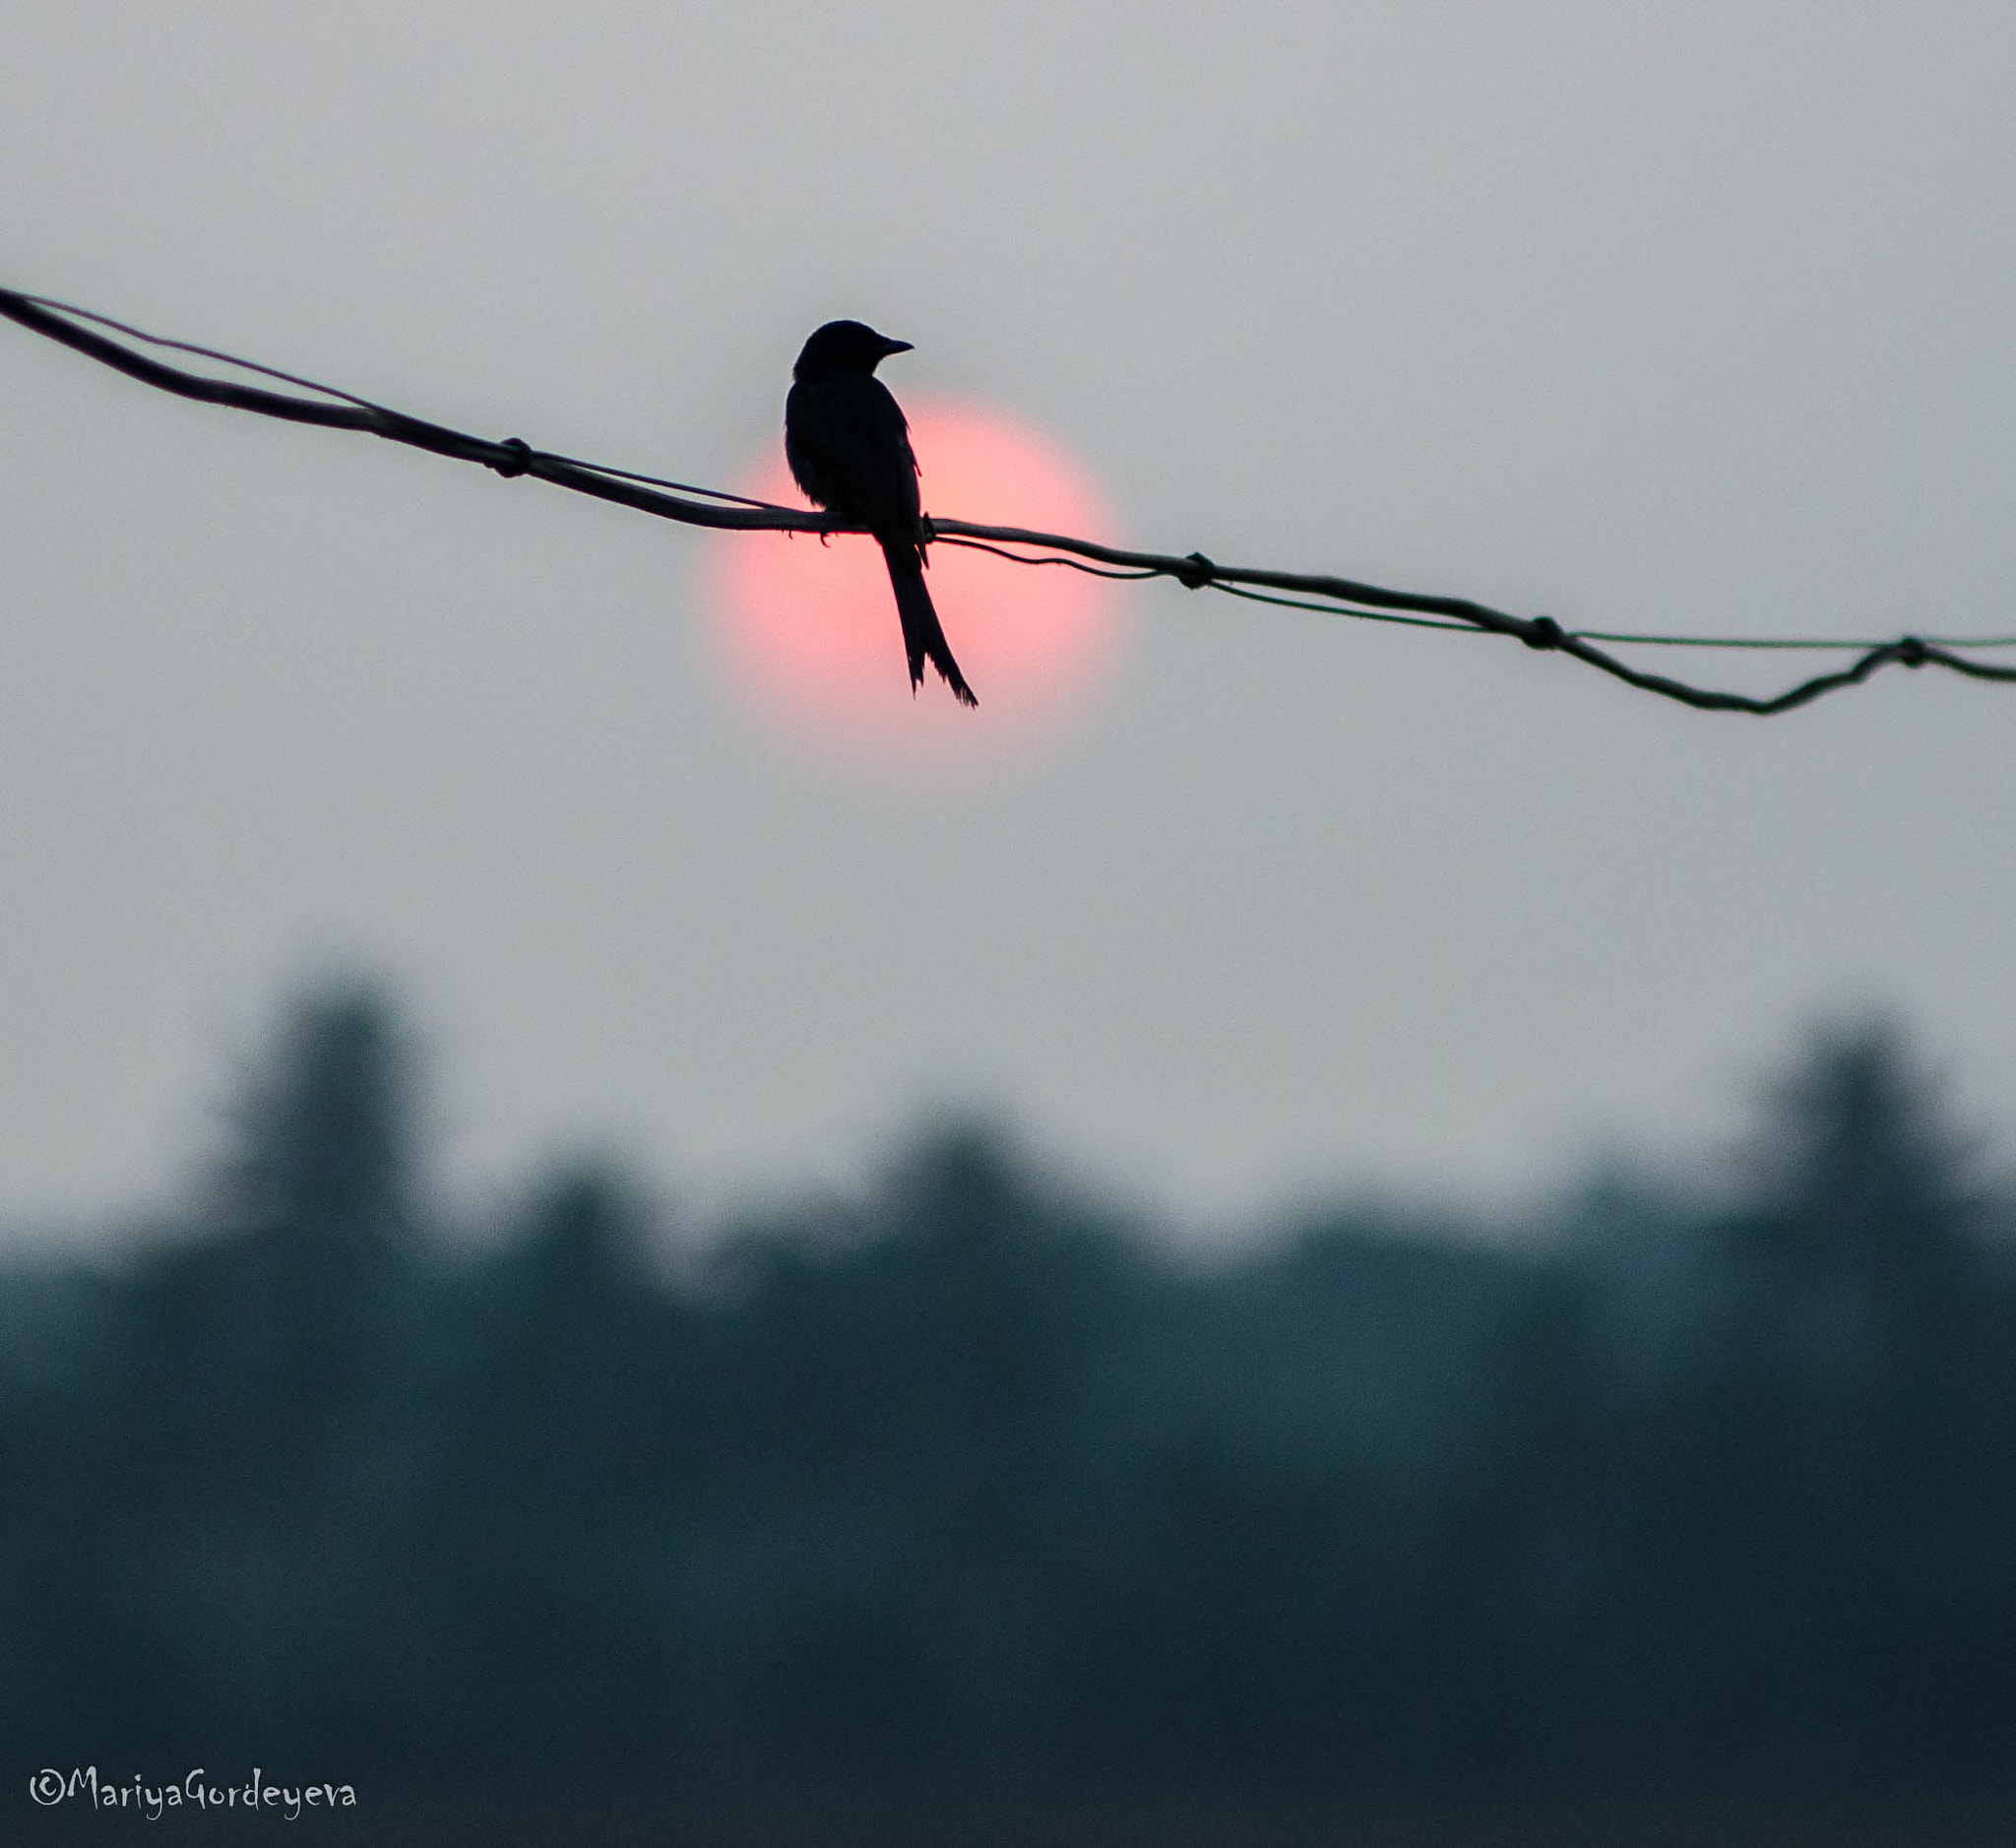 Nikon D7000 sample photo. Sunset bird photography